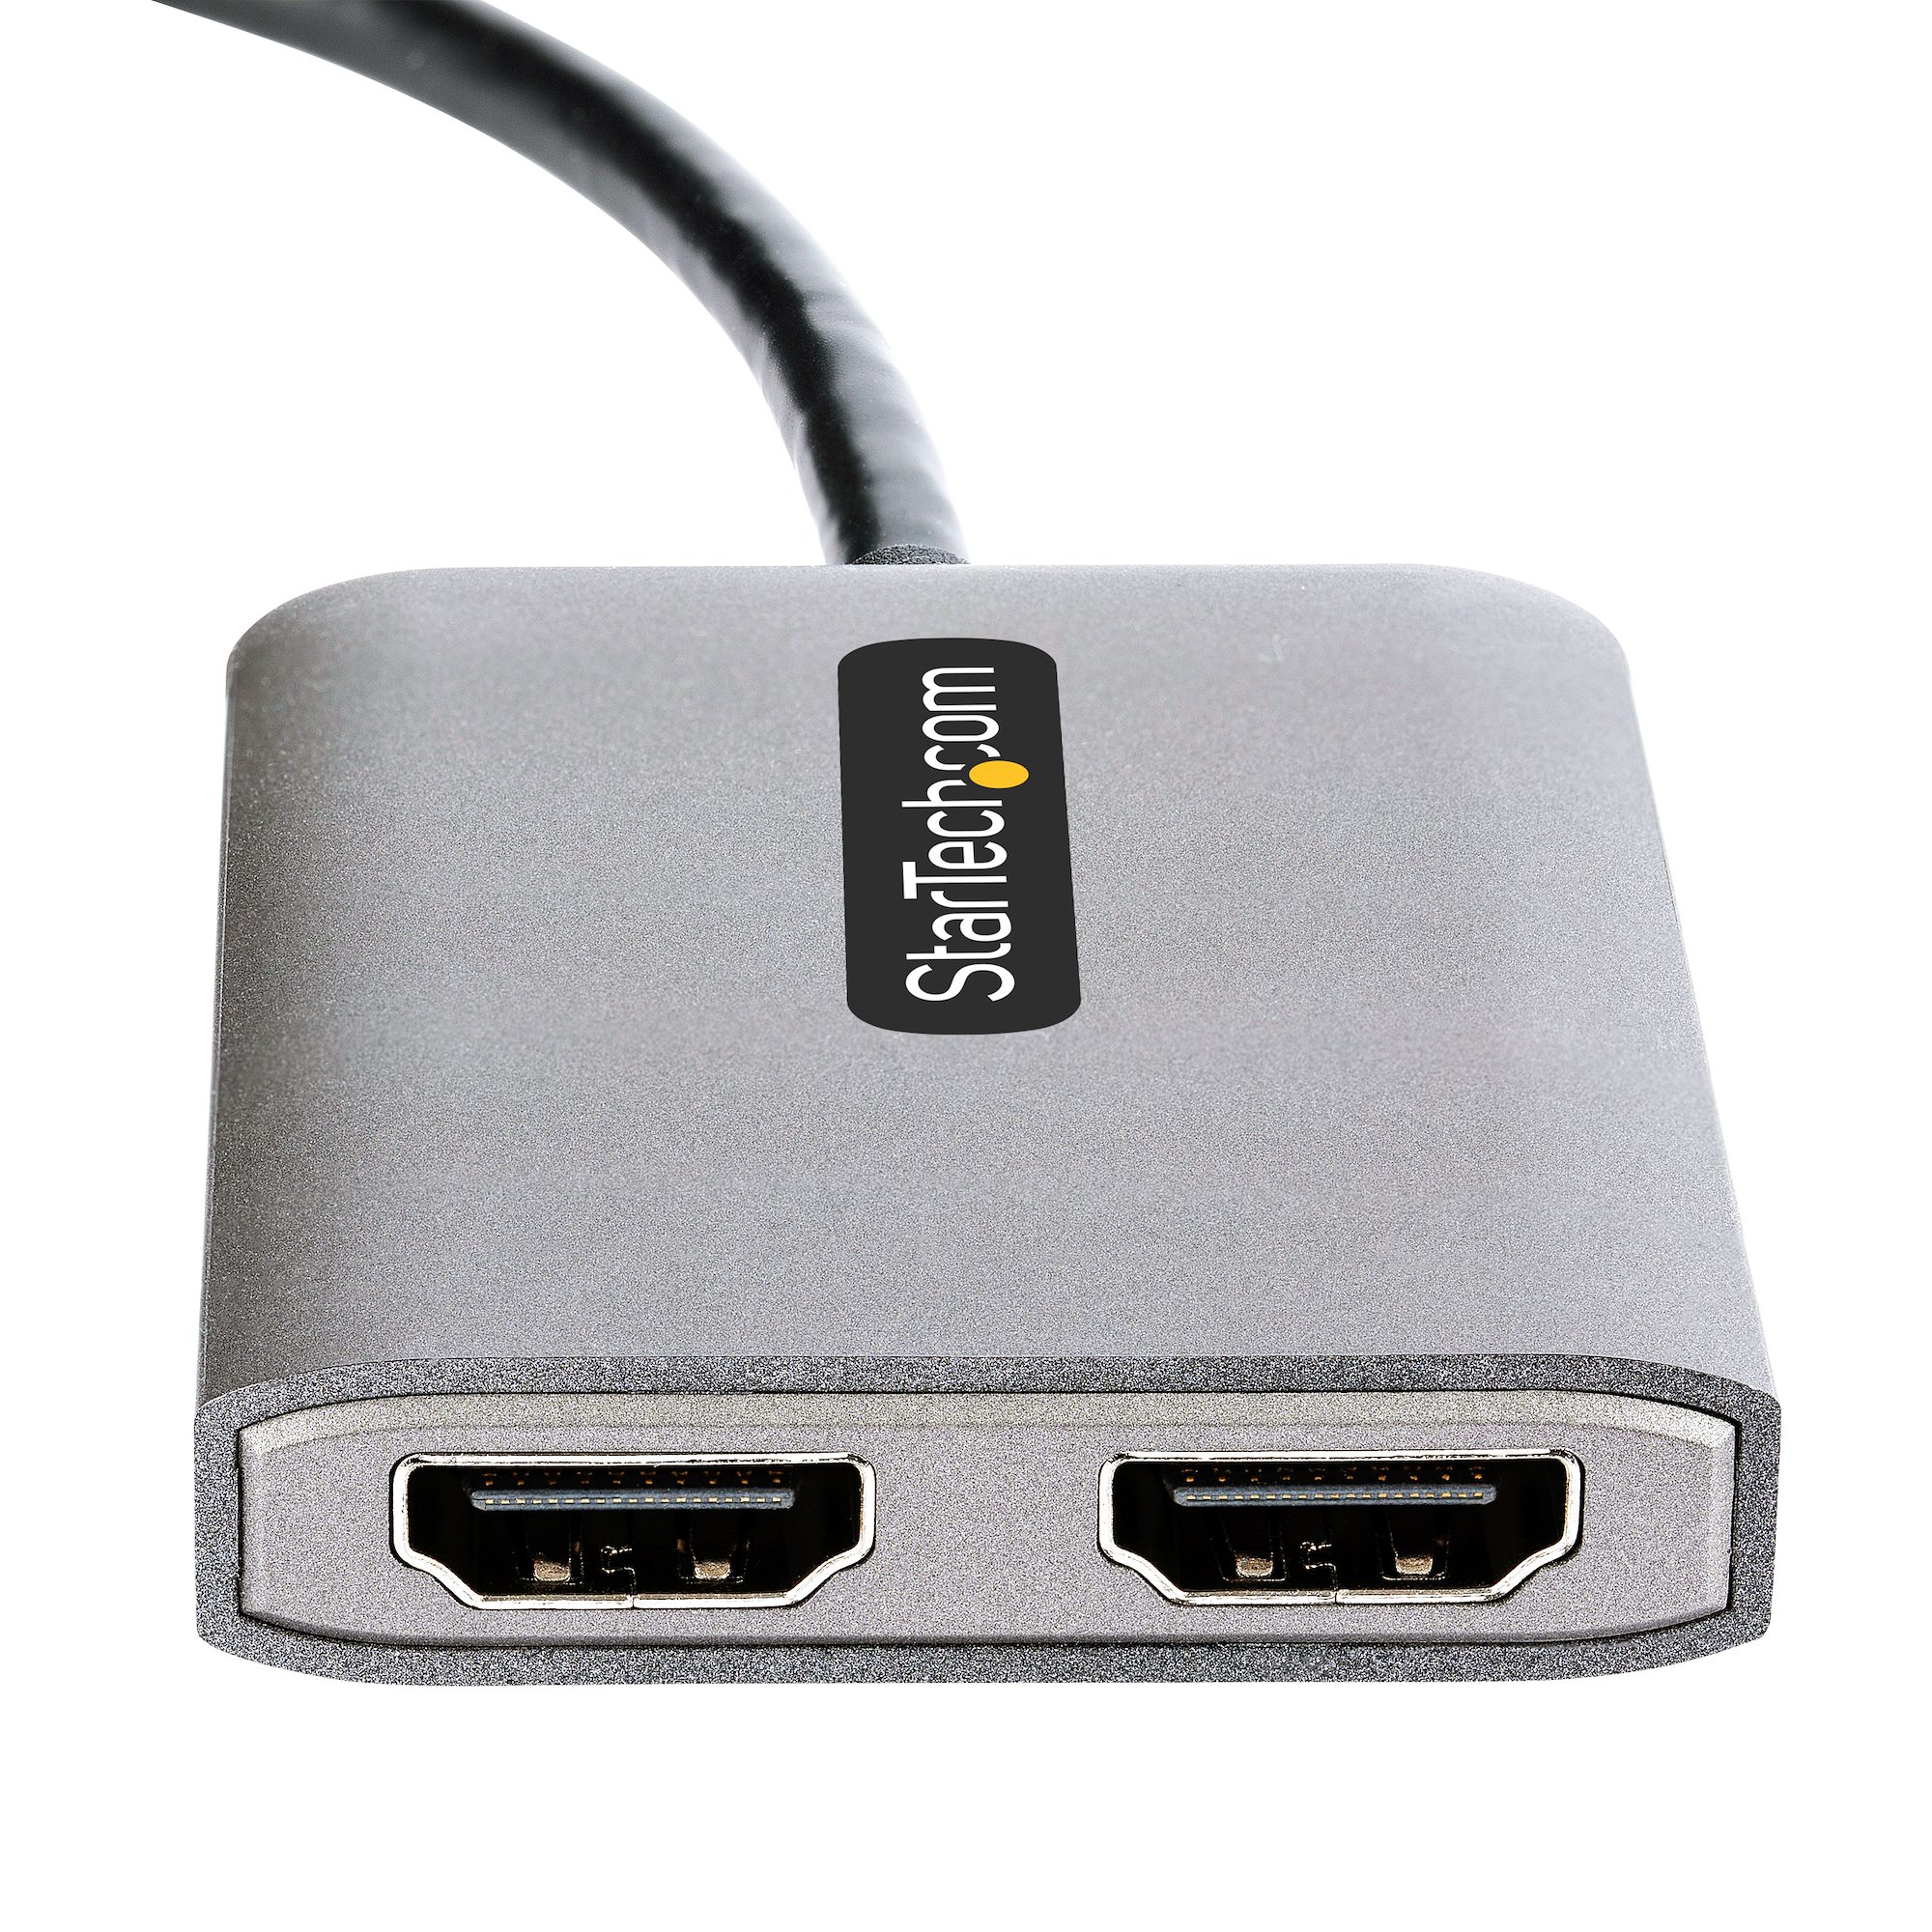 StarTech.com USB-C to Dual HDMI MST HUB - Dual HDMI 4K 60Hz MST14CD122HD 